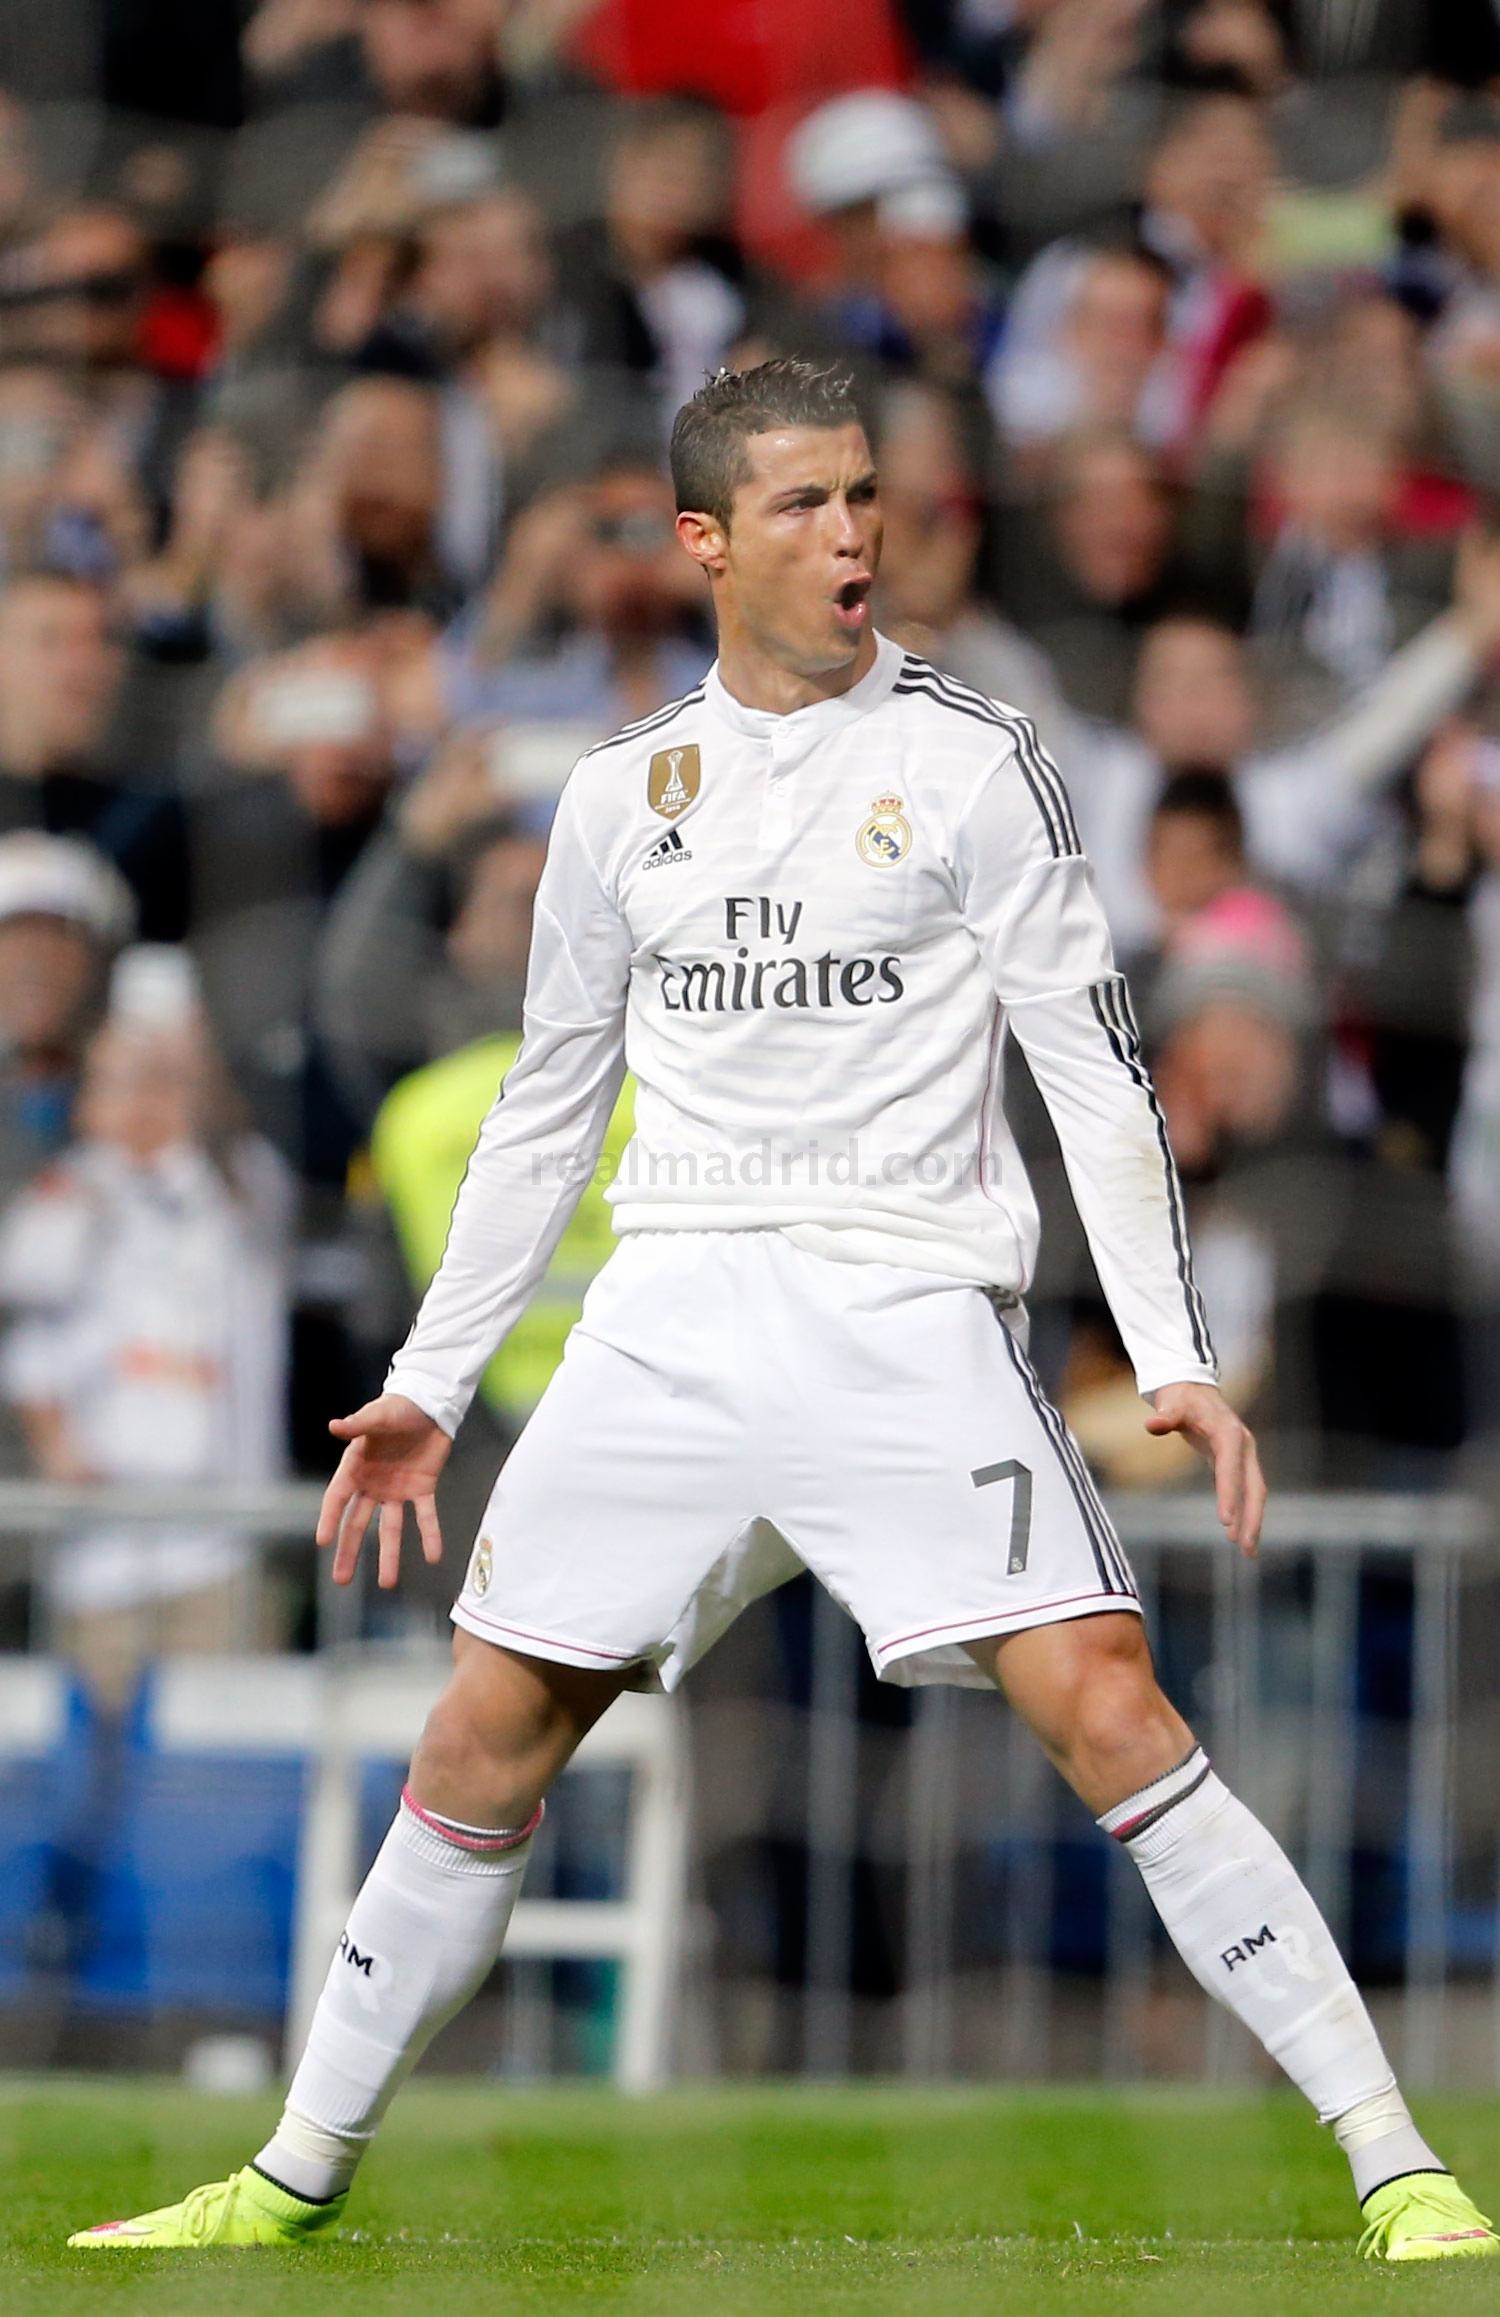 Cristiano Ronaldo, hình ảnh, cảm xúc: Bạn là fan của Cristiano Ronaldo? Hãy xem hình ảnh đầy cảm xúc của siêu sao này trong các trận đấu đỉnh cao. Chắc chắn bạn sẽ cảm thấy sung sướng và hạnh phúc khi chia sẻ những khoảnh khắc đó.